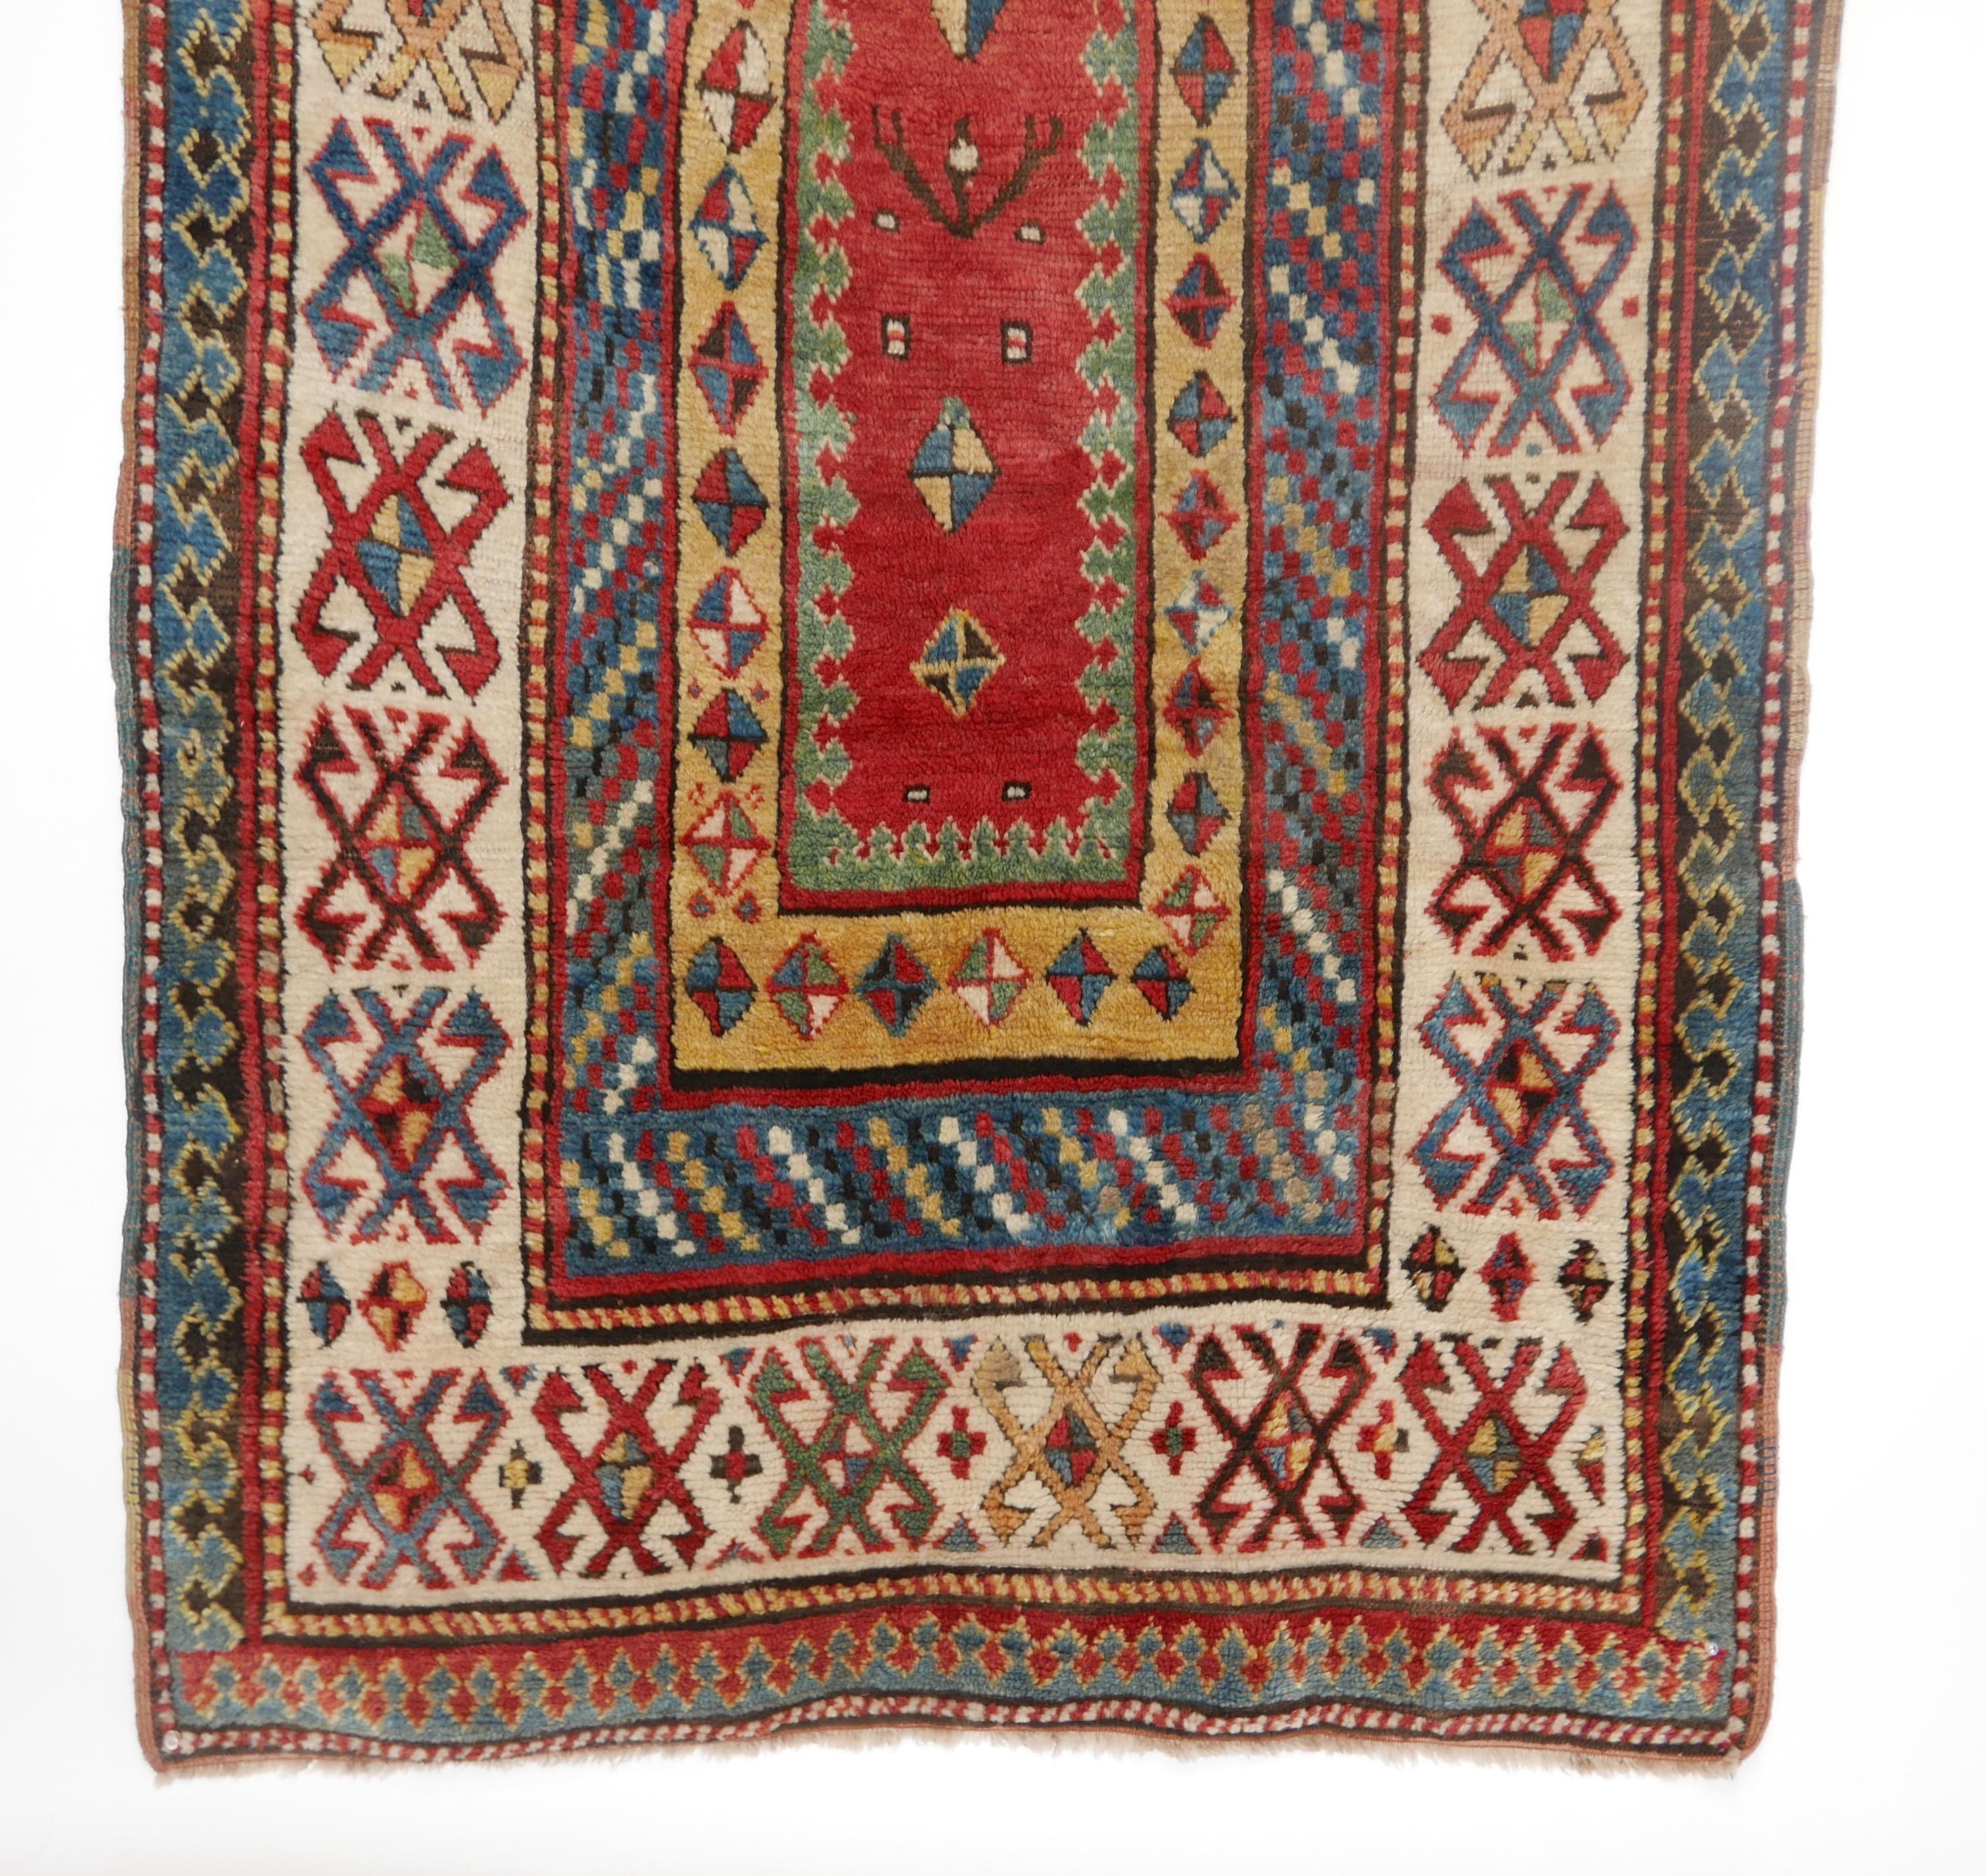 Antique Kazak Wool Rug, 19th Century Kazakhstan 4